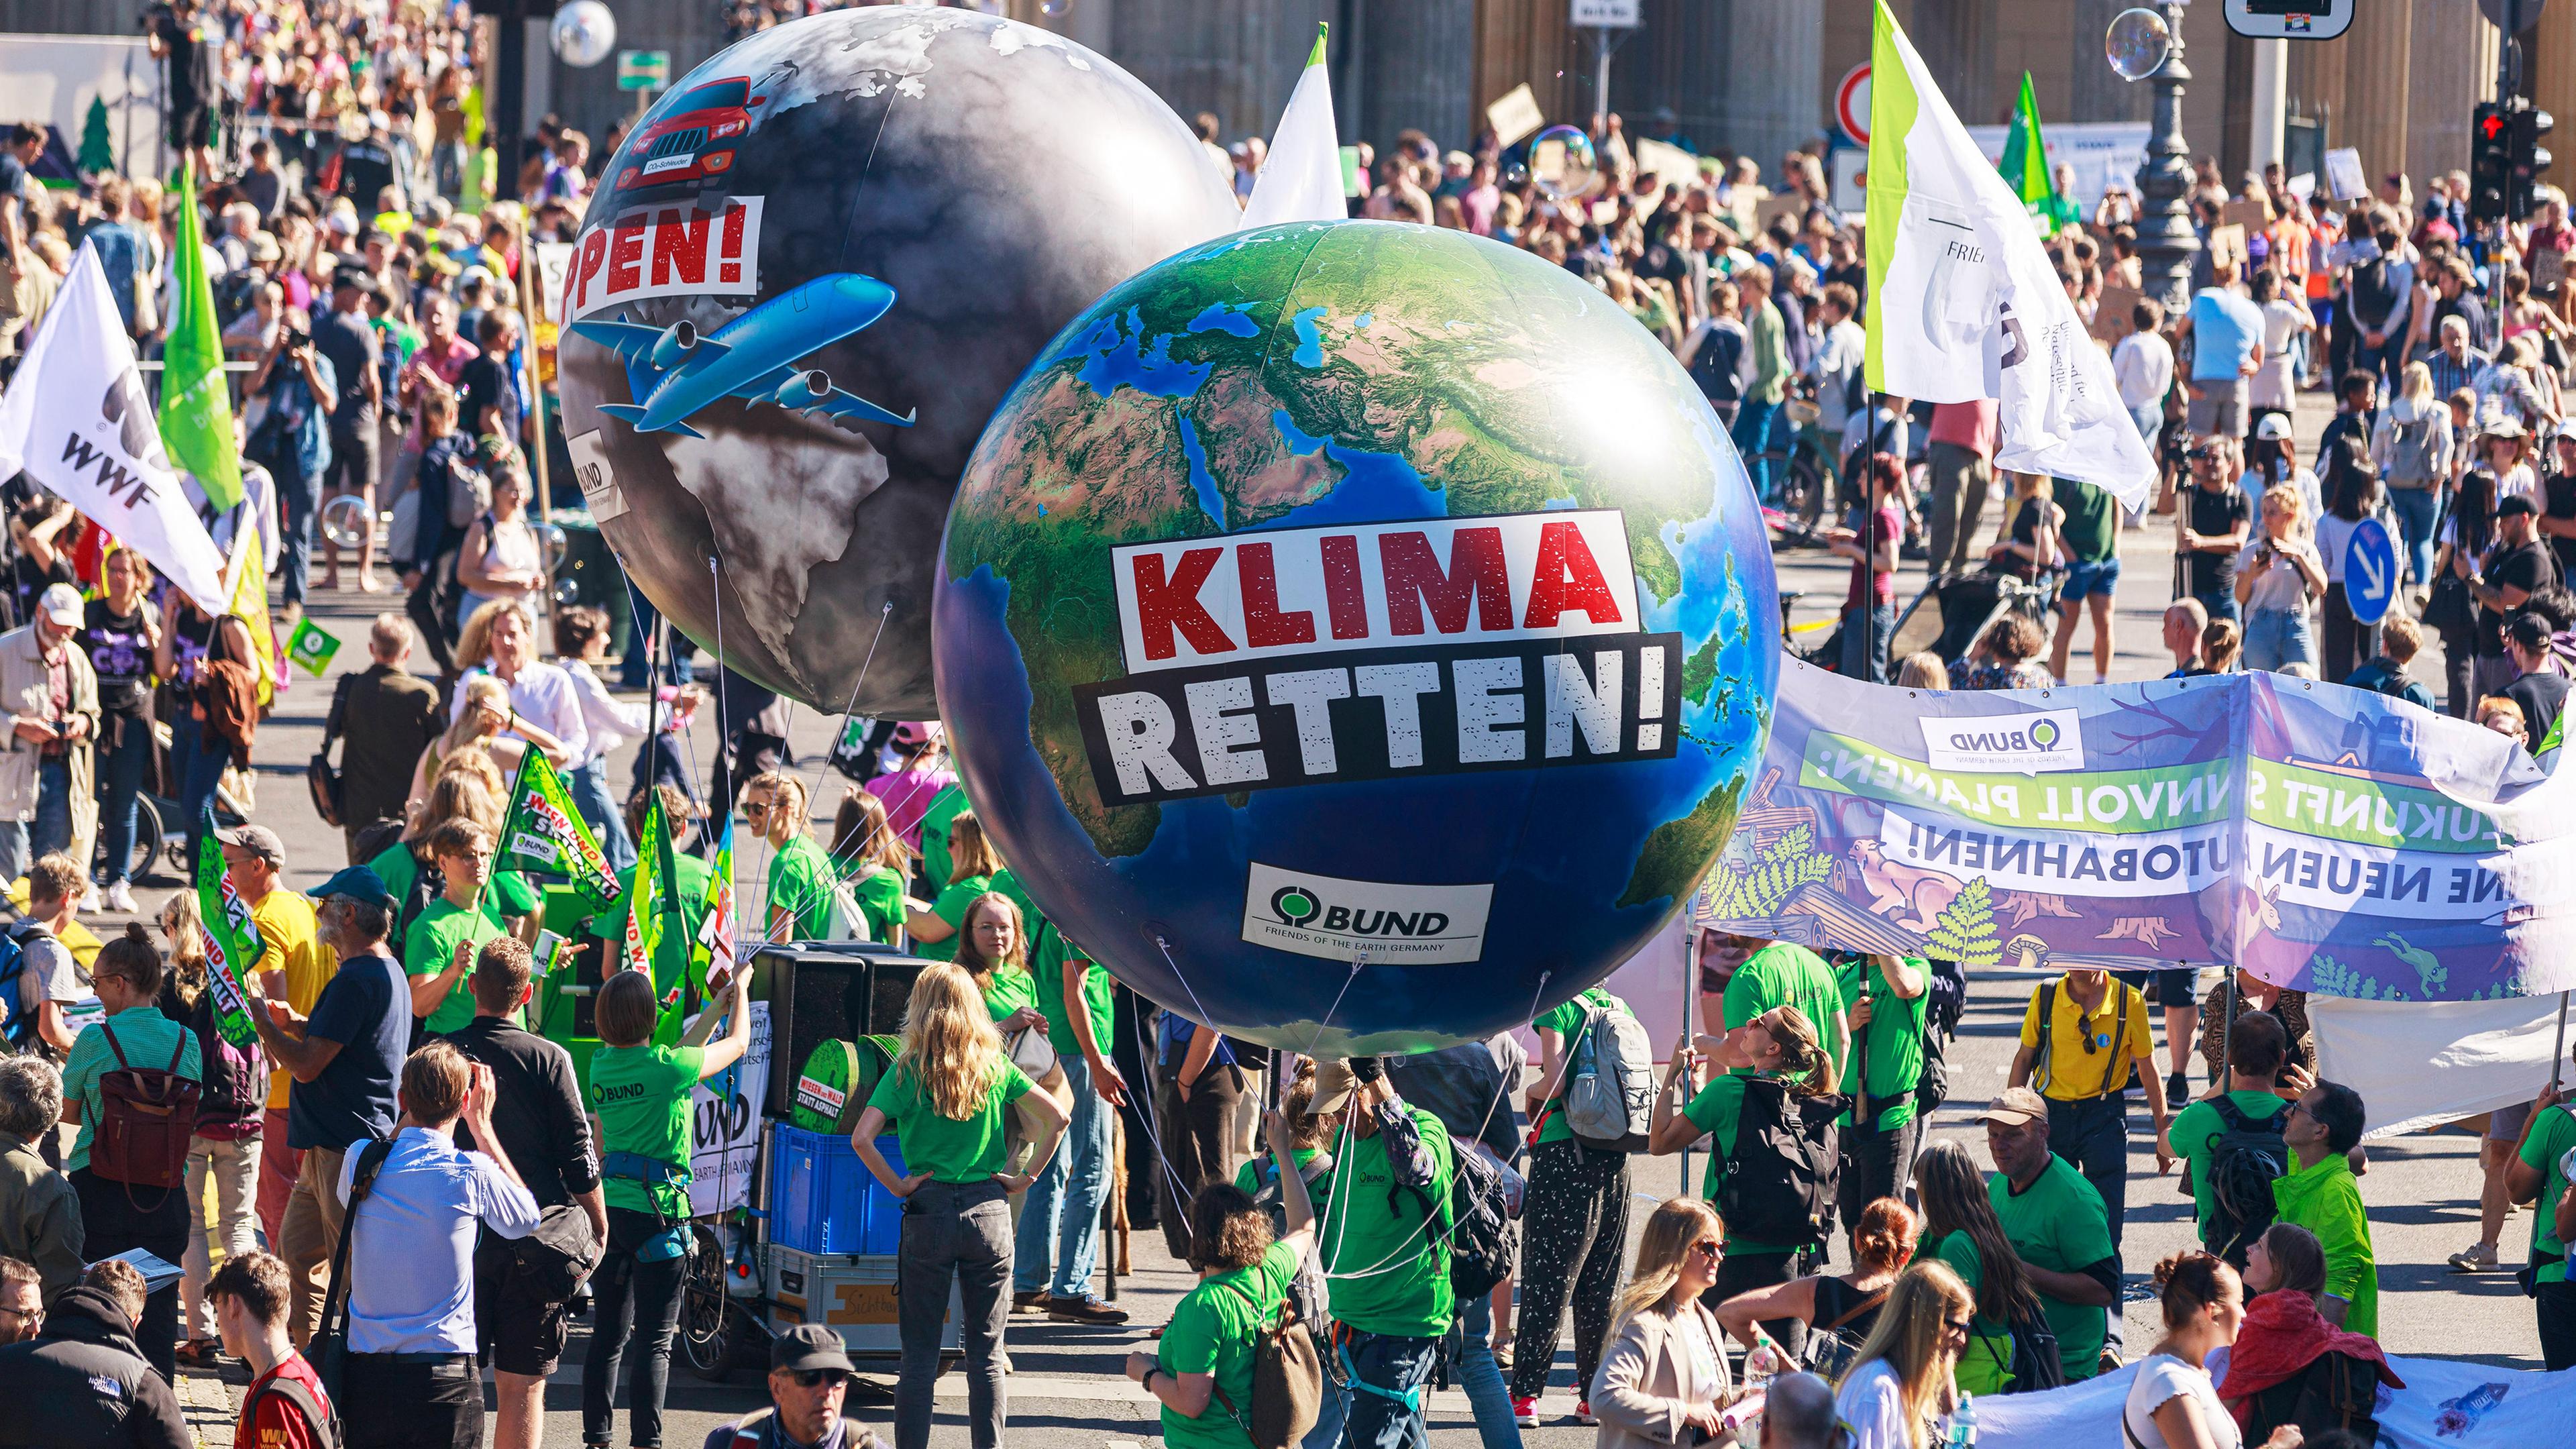 Auf einer Demonstration für die Rettung des Klimas wuseln viele Menschen mit Flaggen, Bannern und zwei riesigen Luftballons in Form der Erde durcheinander.